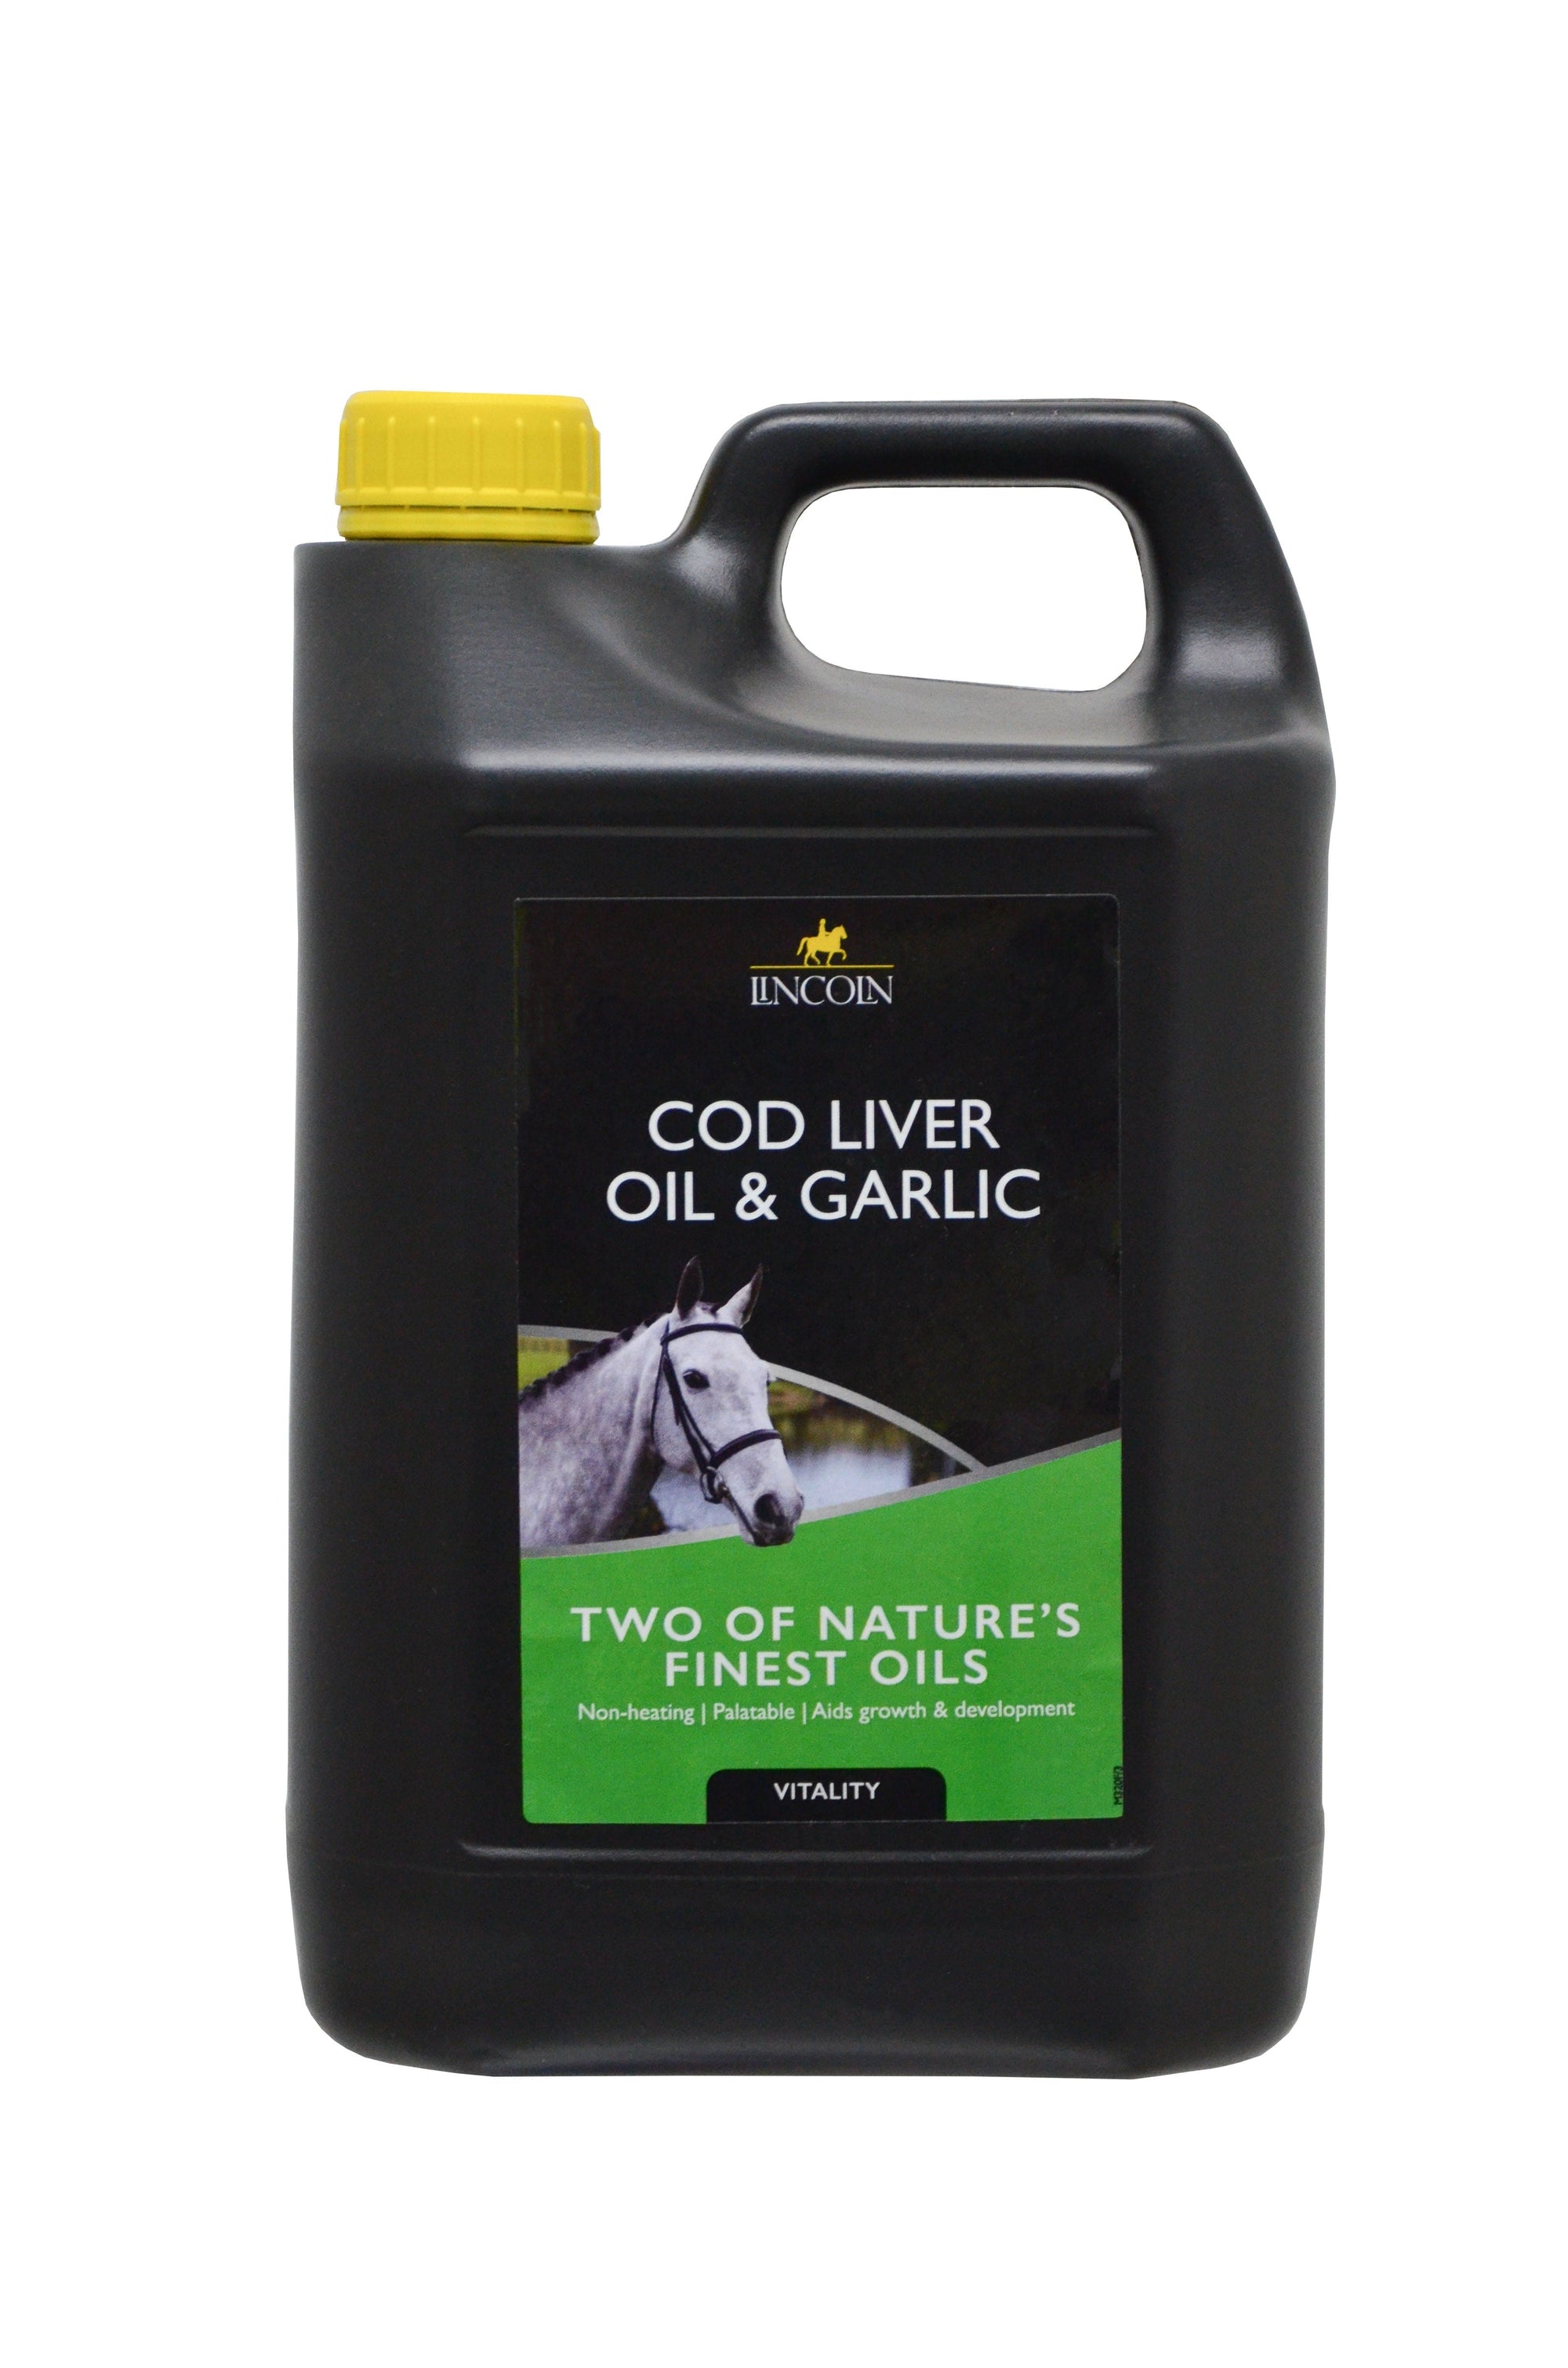 Lincoln cod liver oil & garlic